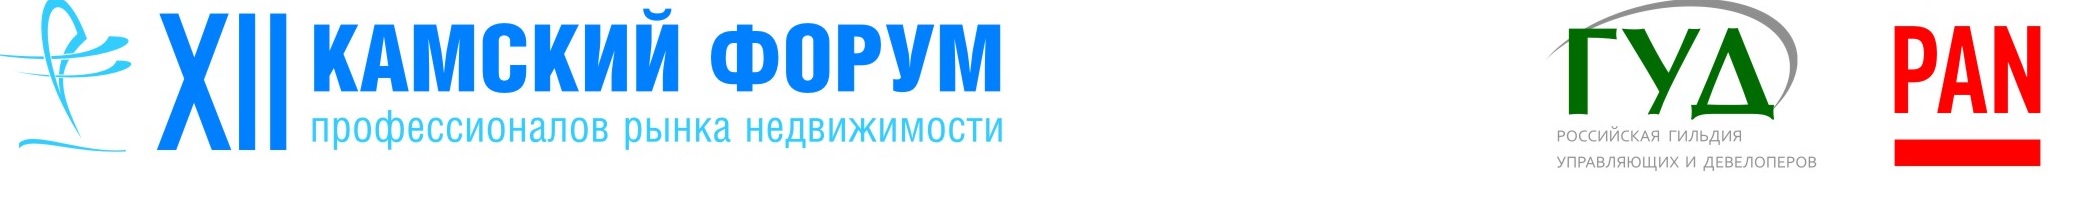 В марте 2017 года пройдет  XII Международный Камский форум недвижимости в Перми